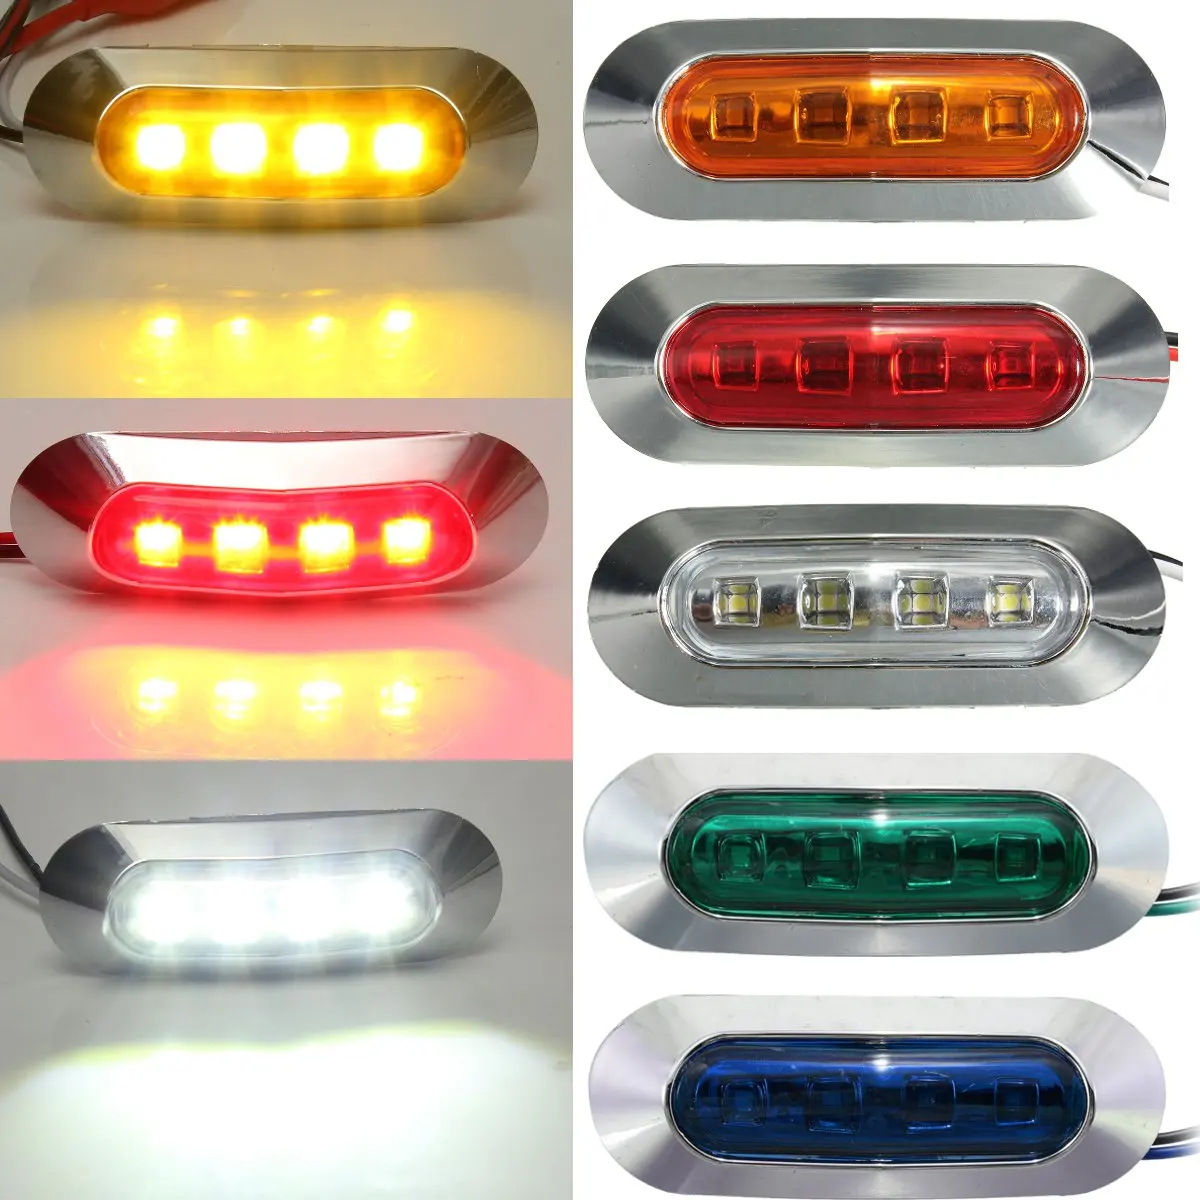 Универсальный 4LED маркер стояночный светильник для автомобиля, грузовика, автобуса, прицепа, боковой маркер, габаритный светильник, красный, белый, янтарный, синий, зеленый